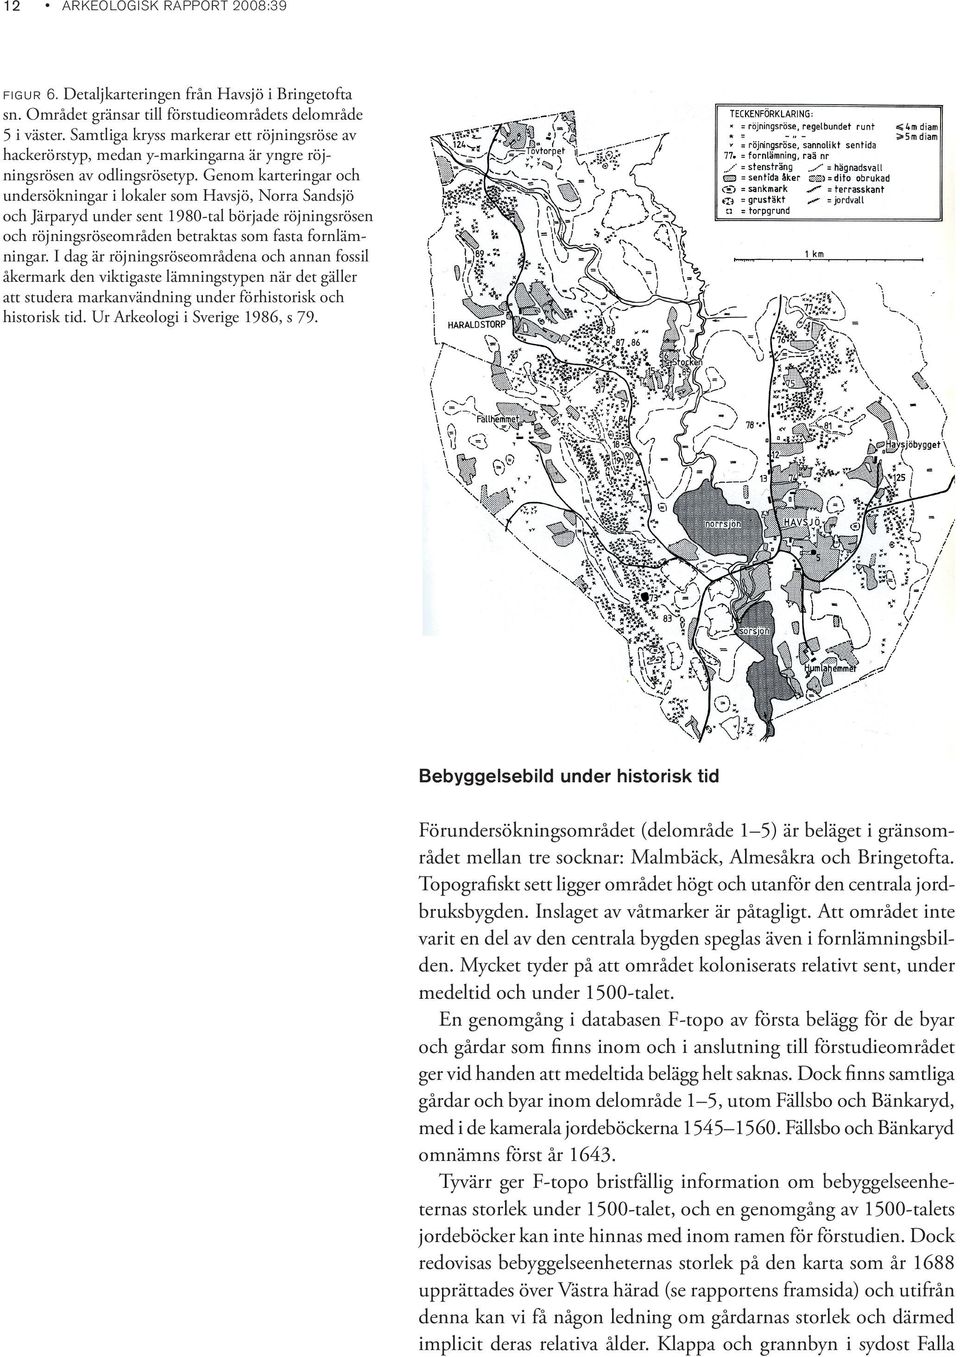 Genom karteringar och undersökningar i lokaler som Havsjö, Norra Sandsjö och Järparyd under sent 1980-tal började röjningsrösen och röjningsröseområden betraktas som fasta fornlämningar.